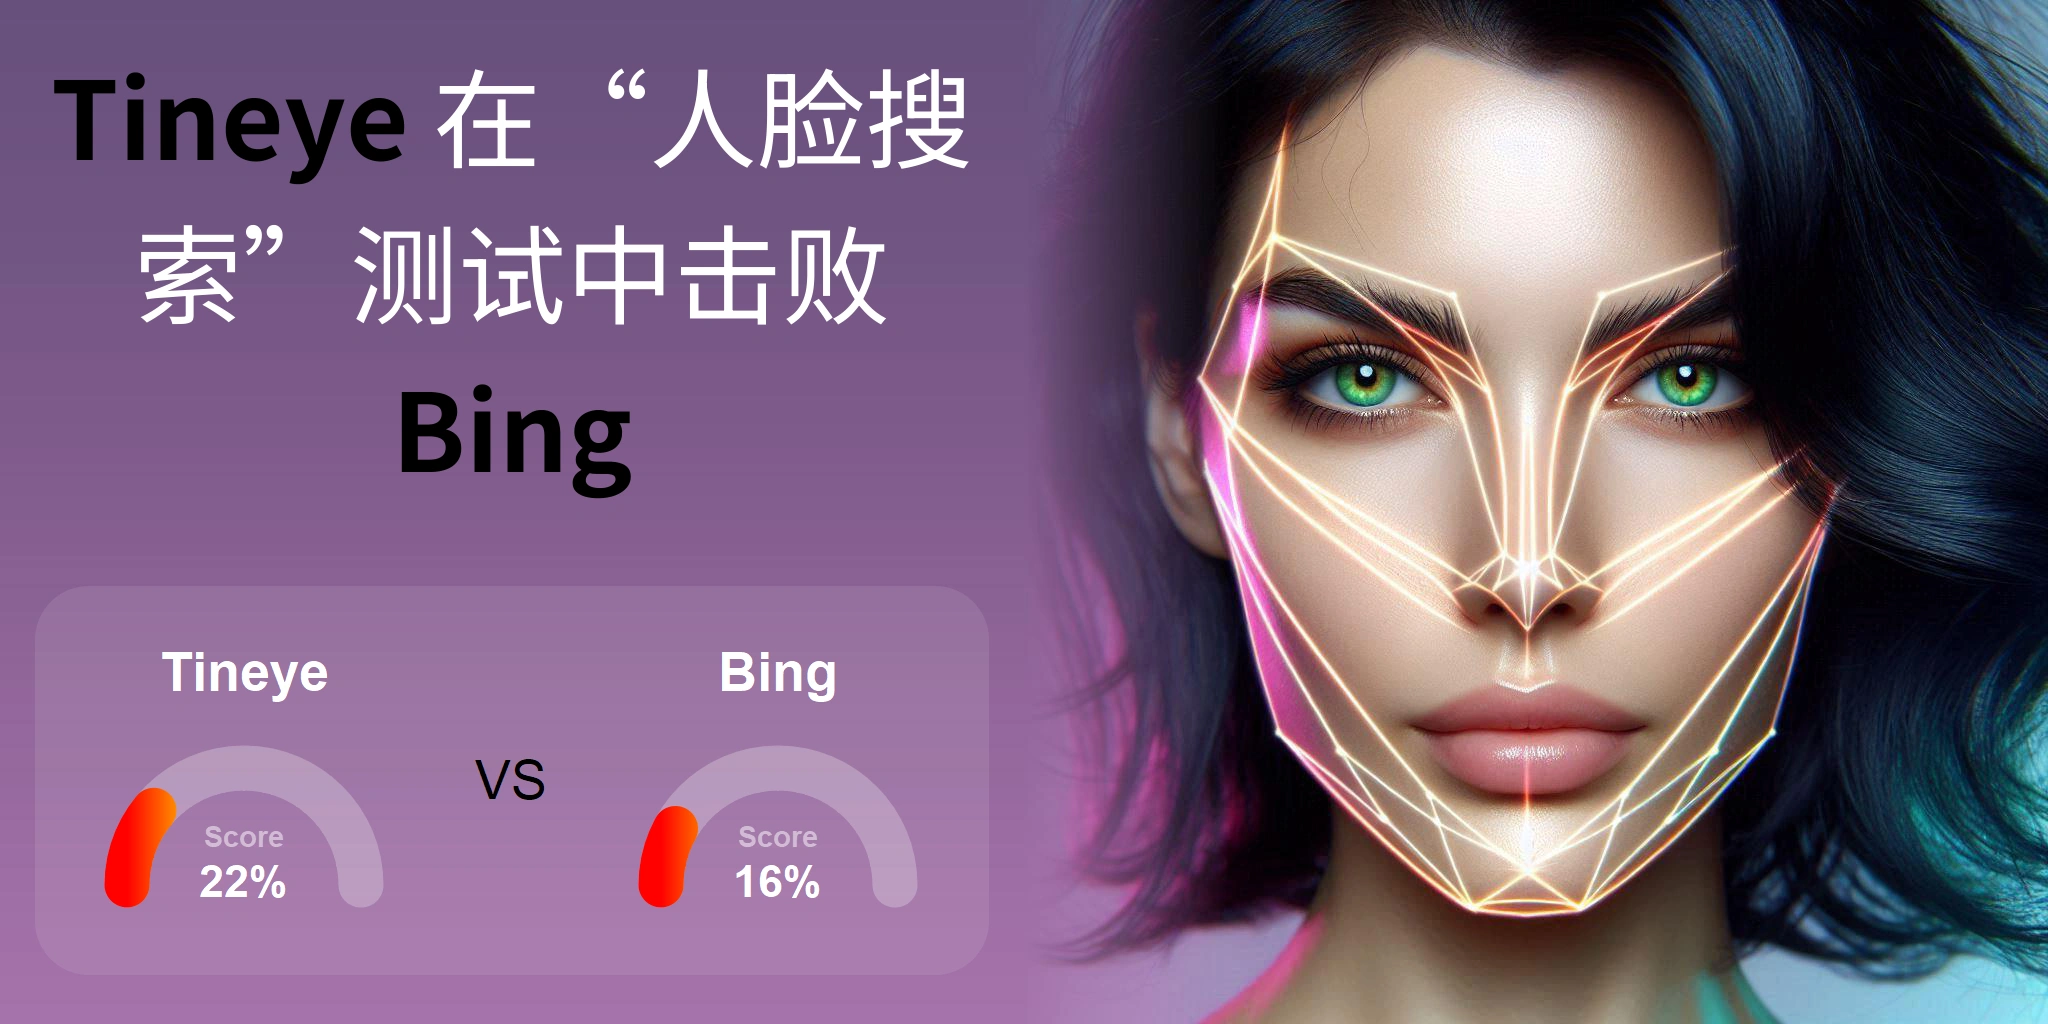 哪一个更适合人脸搜索：<br>Tineye 还是 Bing？